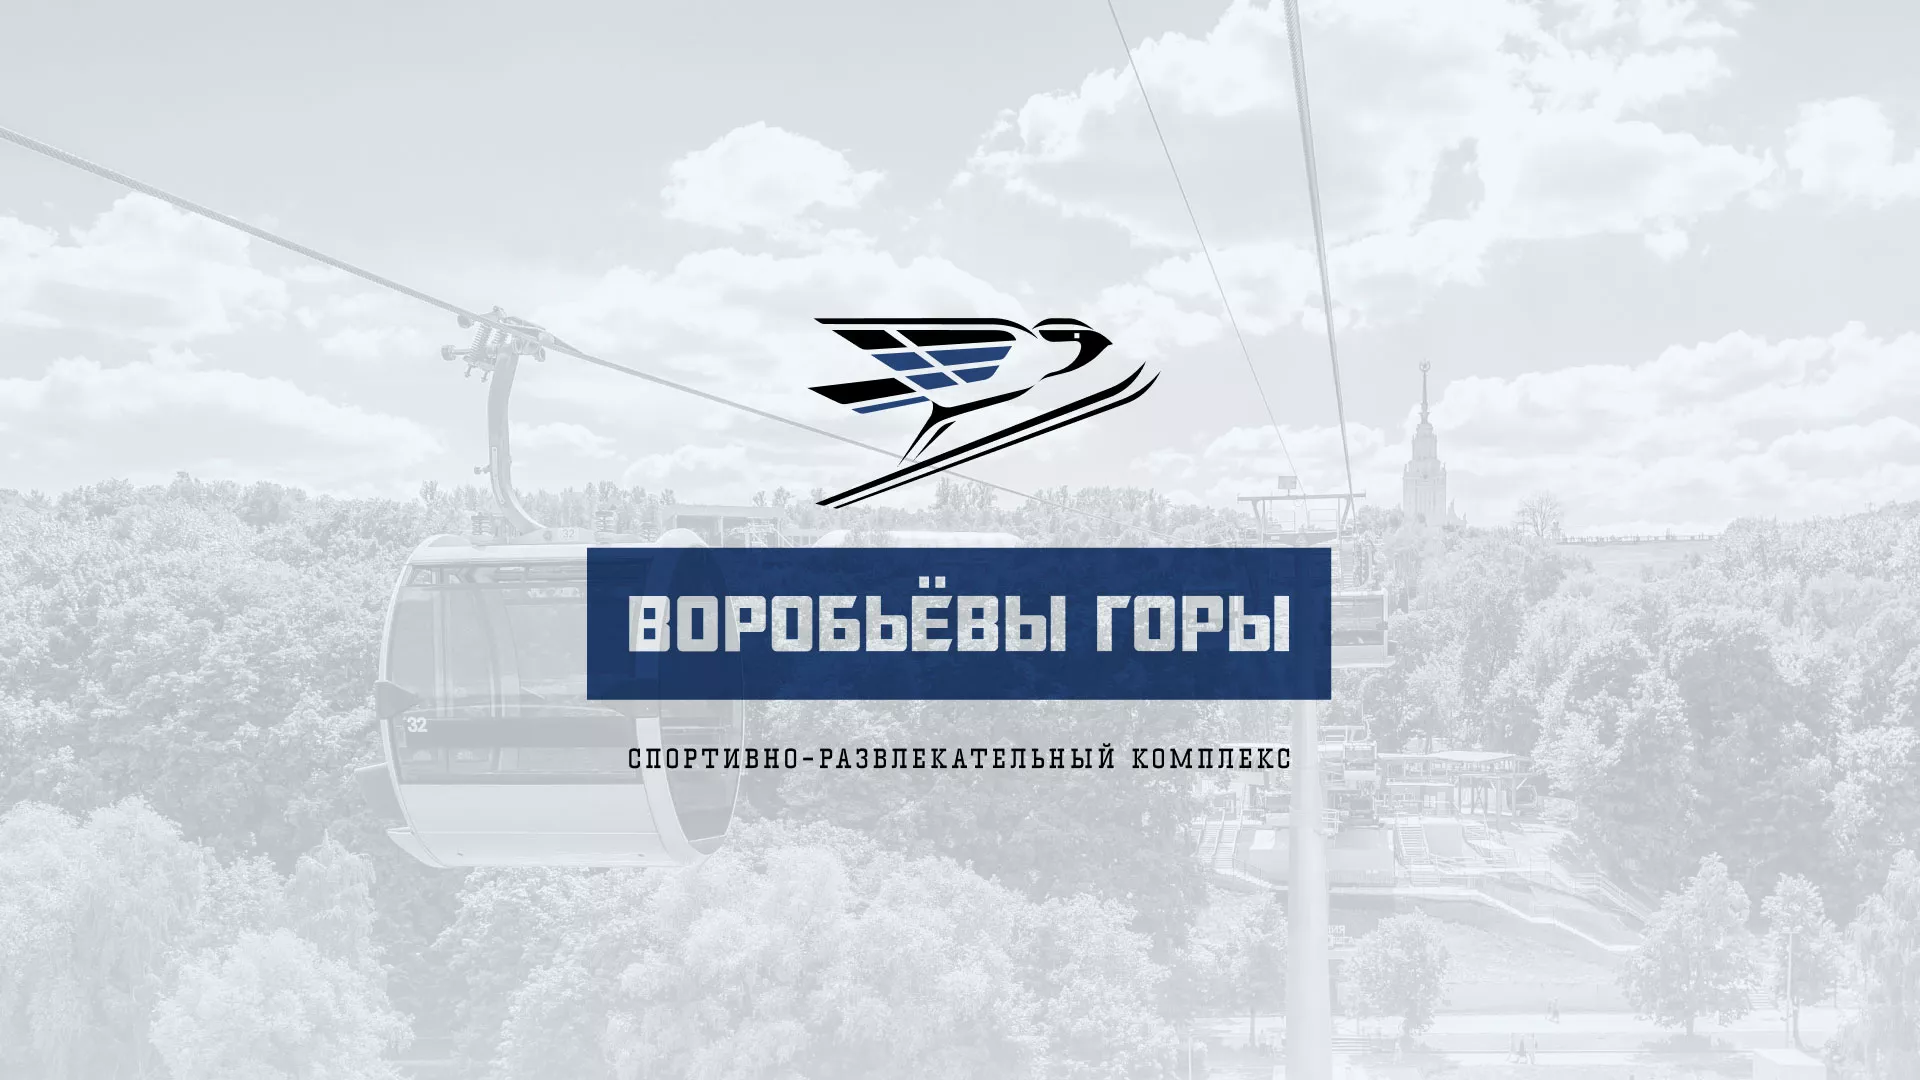 Разработка сайта в Боброве для спортивно-развлекательного комплекса «Воробьёвы горы»